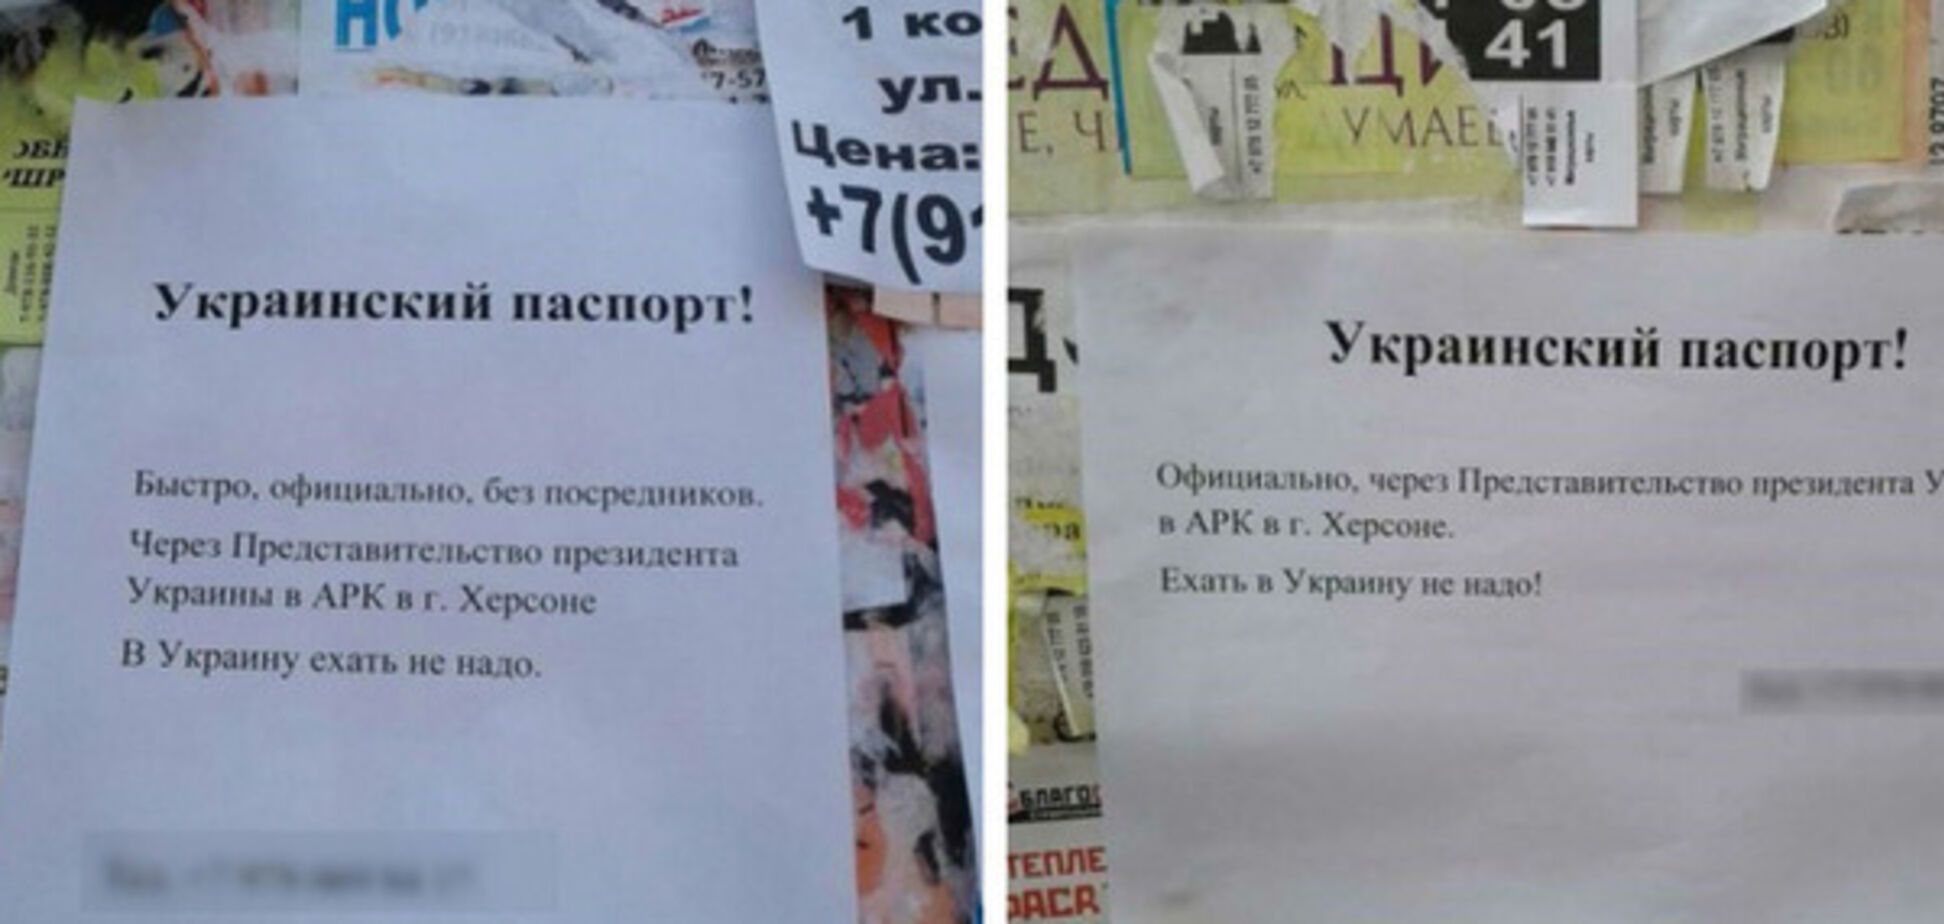 Украинский безвиз положил начало новому виду 'бизнеса' в Крыму: появилось фото